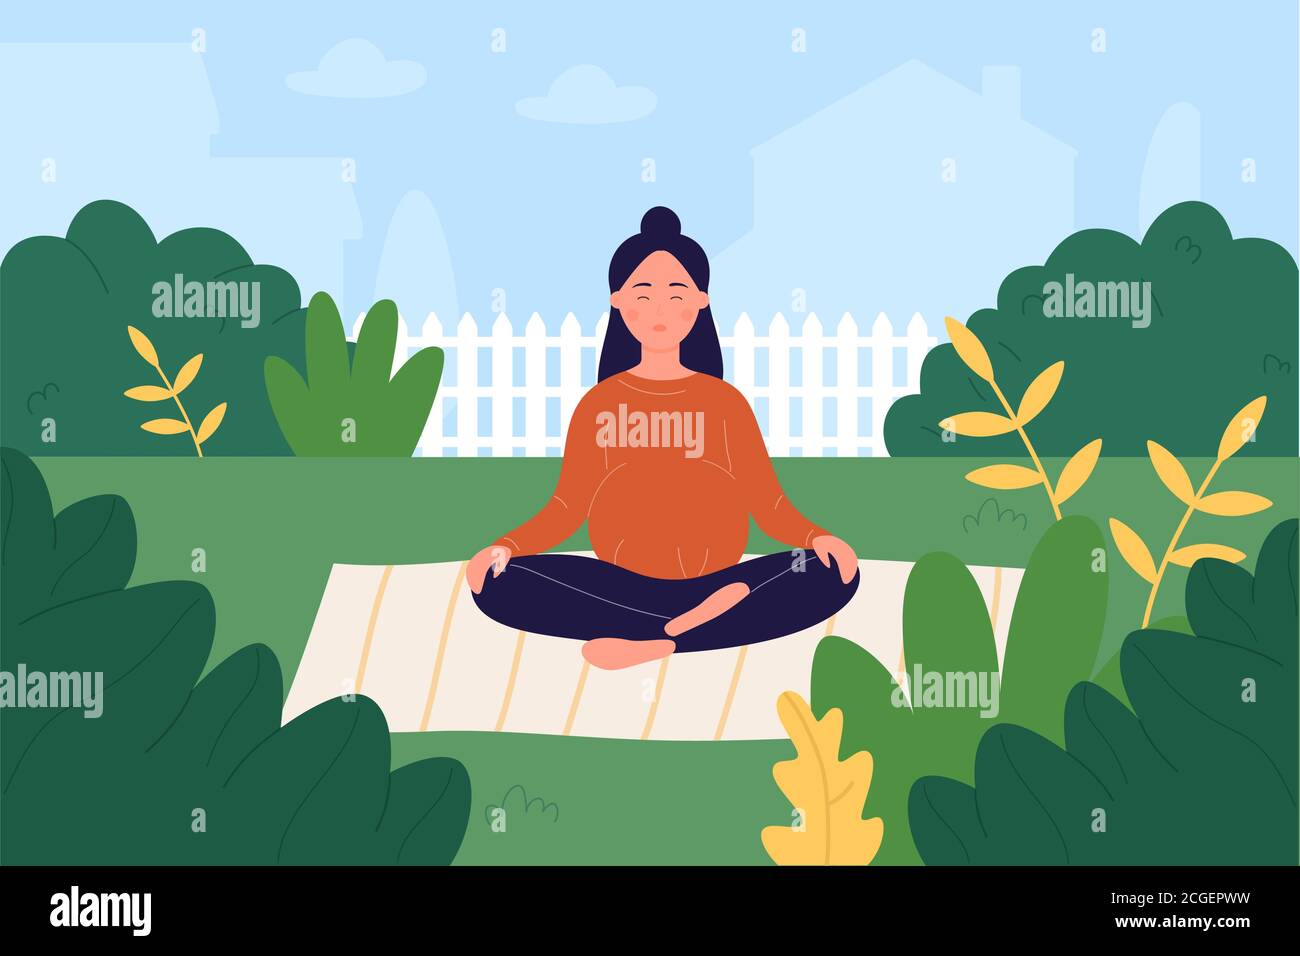 Pränatale Yoga-Vektor-Illustration. Cartoon schwangere Frau Charakter kümmert sich um die geistige und körperliche Gesundheit, tun Lotus Yoga Asana Pose im Garten, Schwangerschaft gesunde Lebensweise Workout Hintergrund Stock Vektor